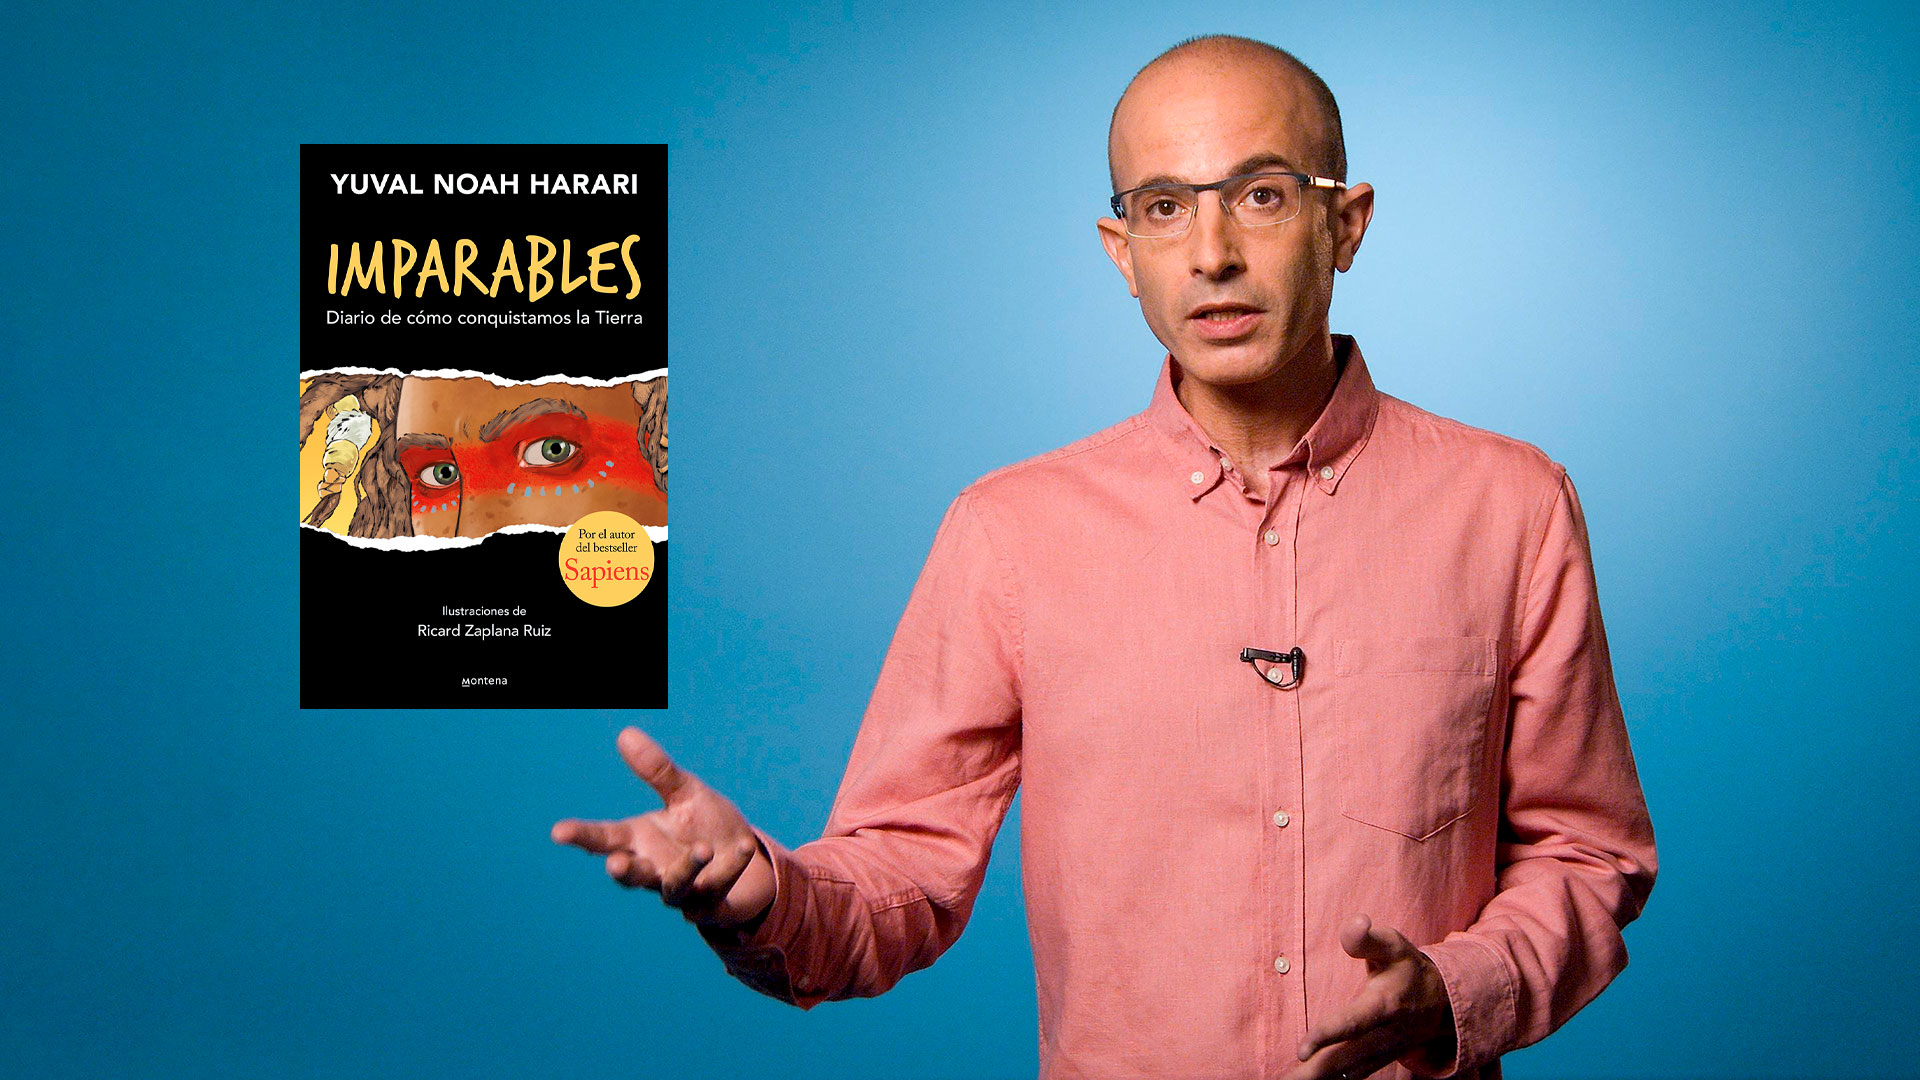 ¿Qué tiene que ver la prehistoria con tus pesadillas? Yuval Noah Harari lo cuenta en “Imparables”, su nuevo libro